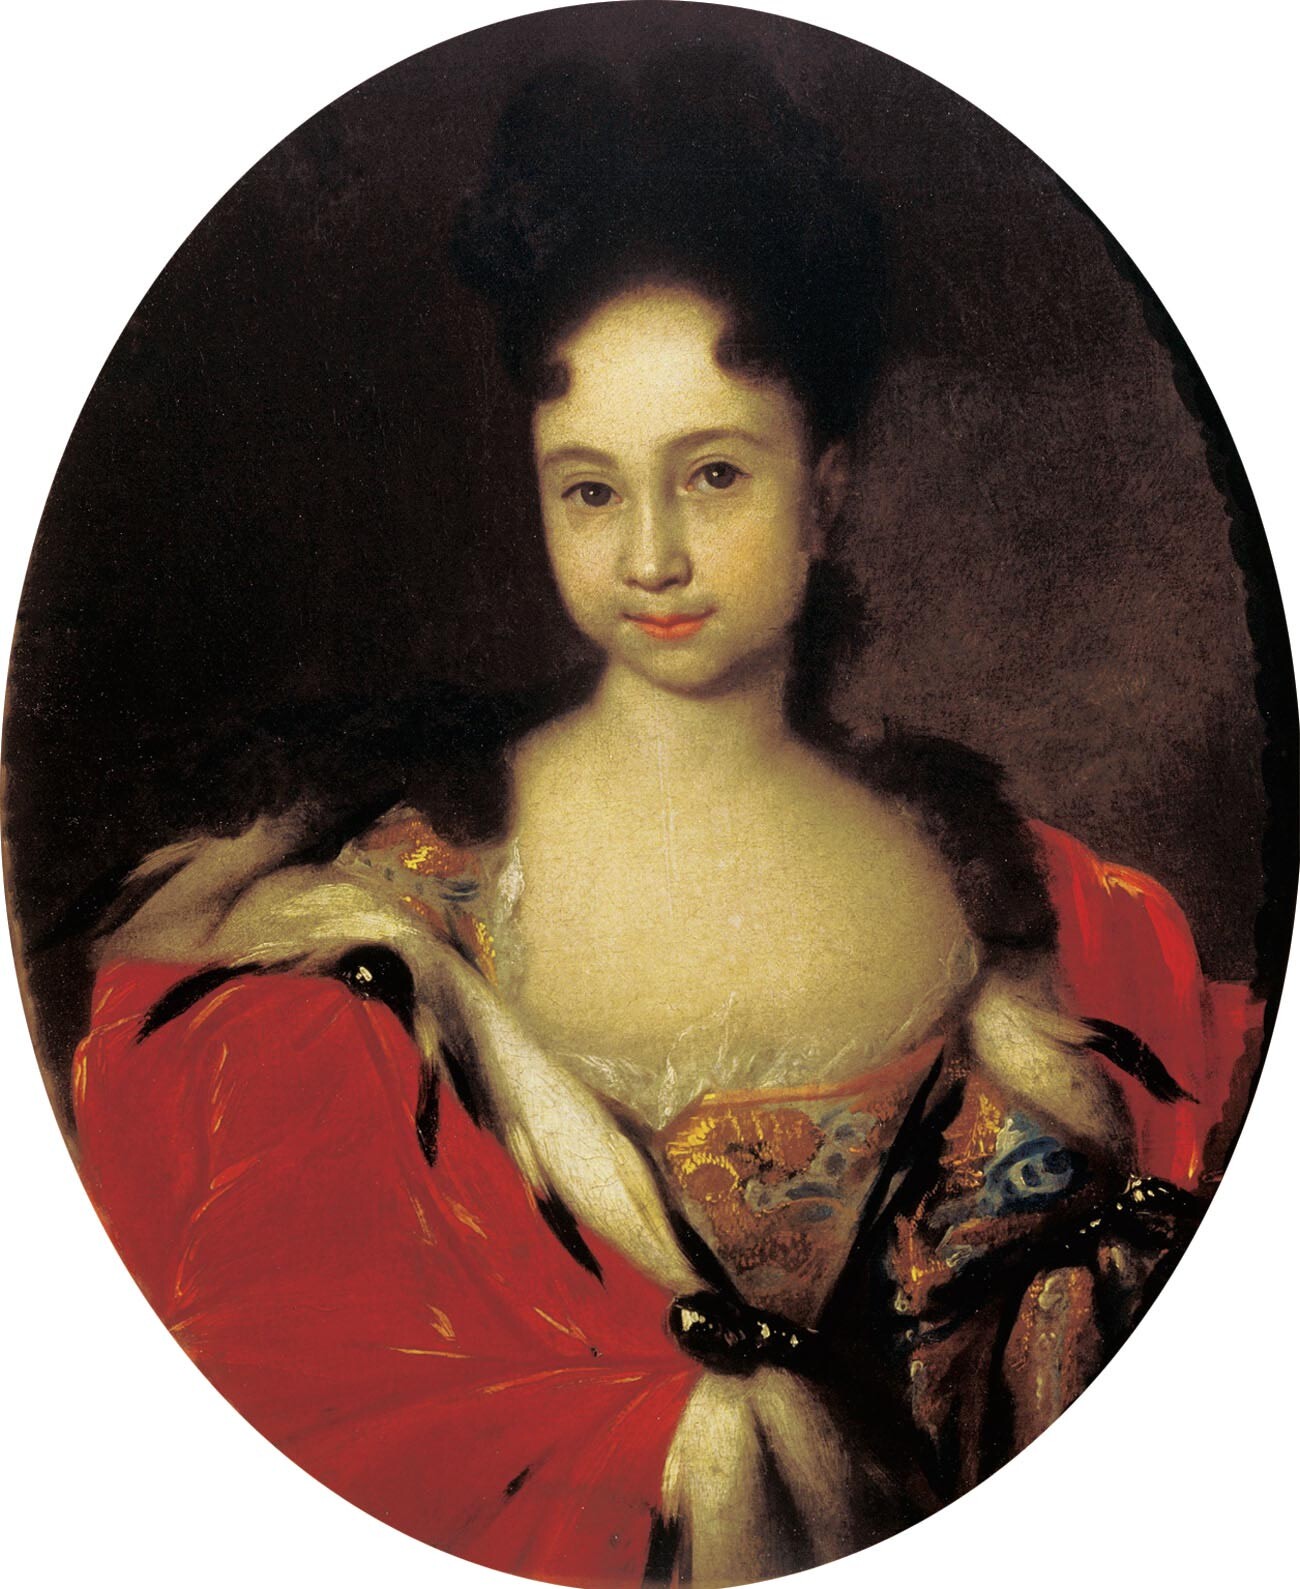 Anna nel 1716. Nel ritratto, Anna ha circa sei o sette anni, ma i suoi capelli sono acconciati come quelli di una signora e lei è vestita come una donna adulta